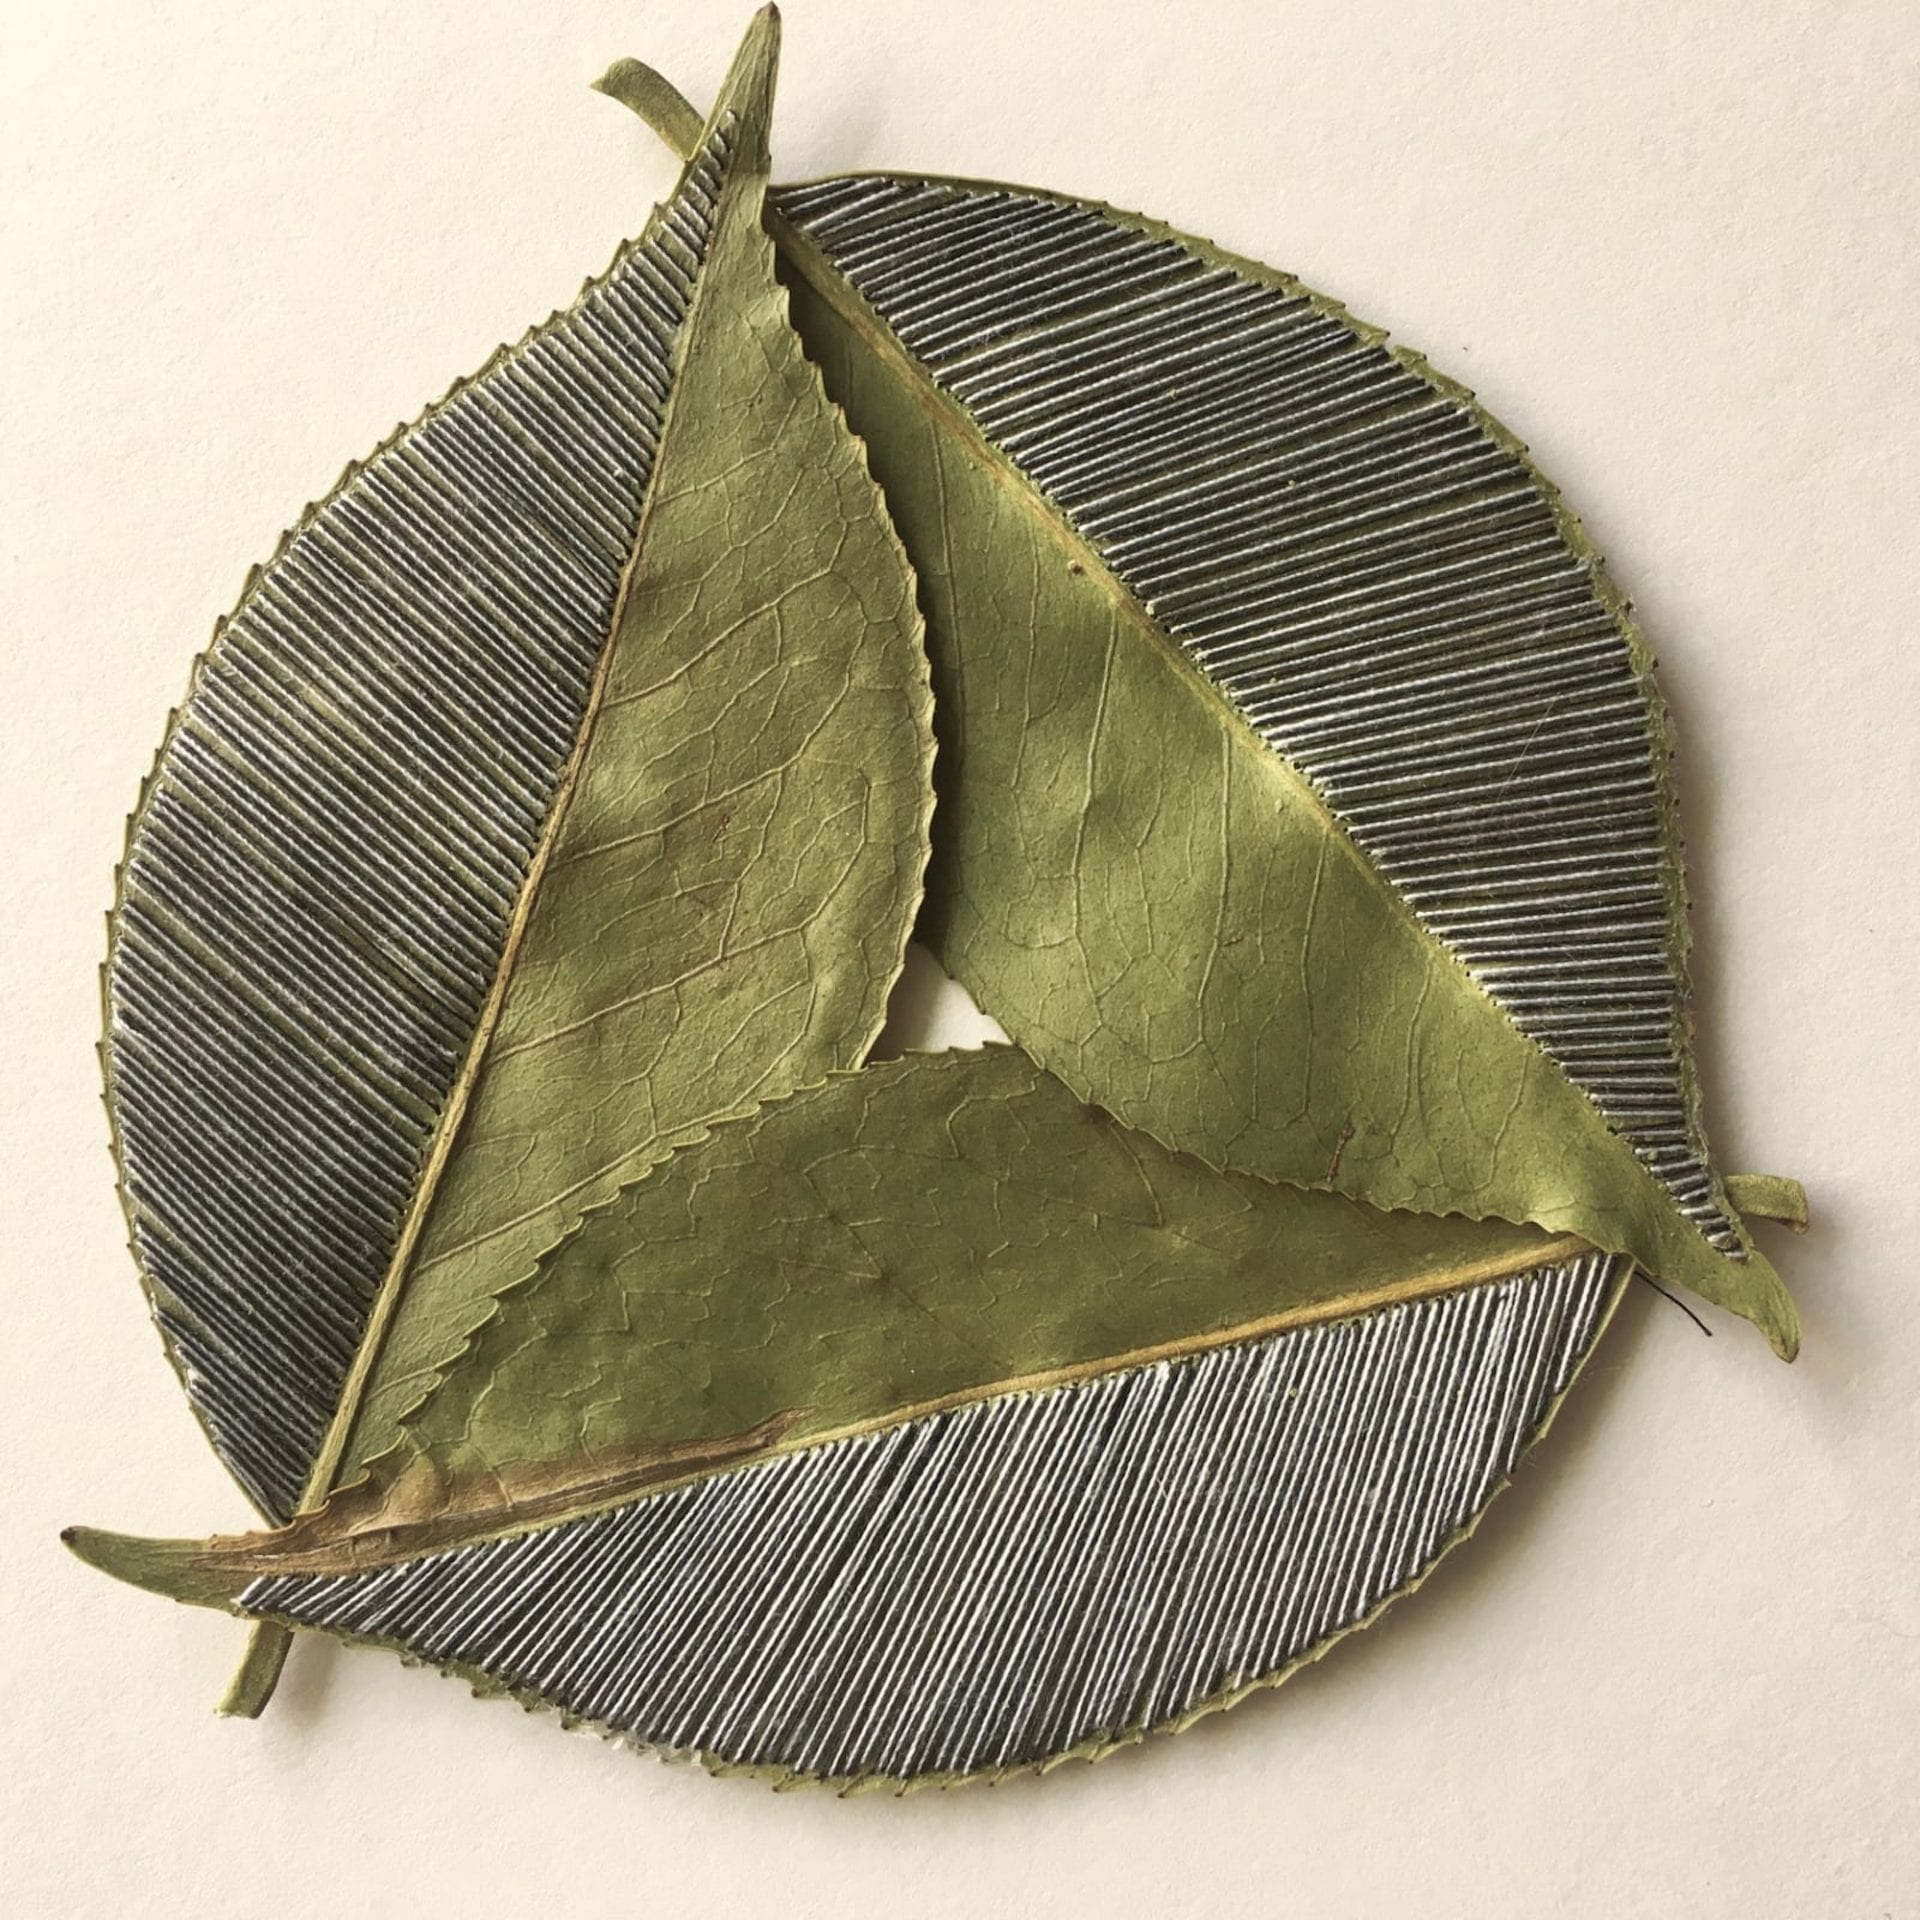 L’artiste Hillary Waters Fayle réalise de merveilleuses broderies sur des feuilles séchées